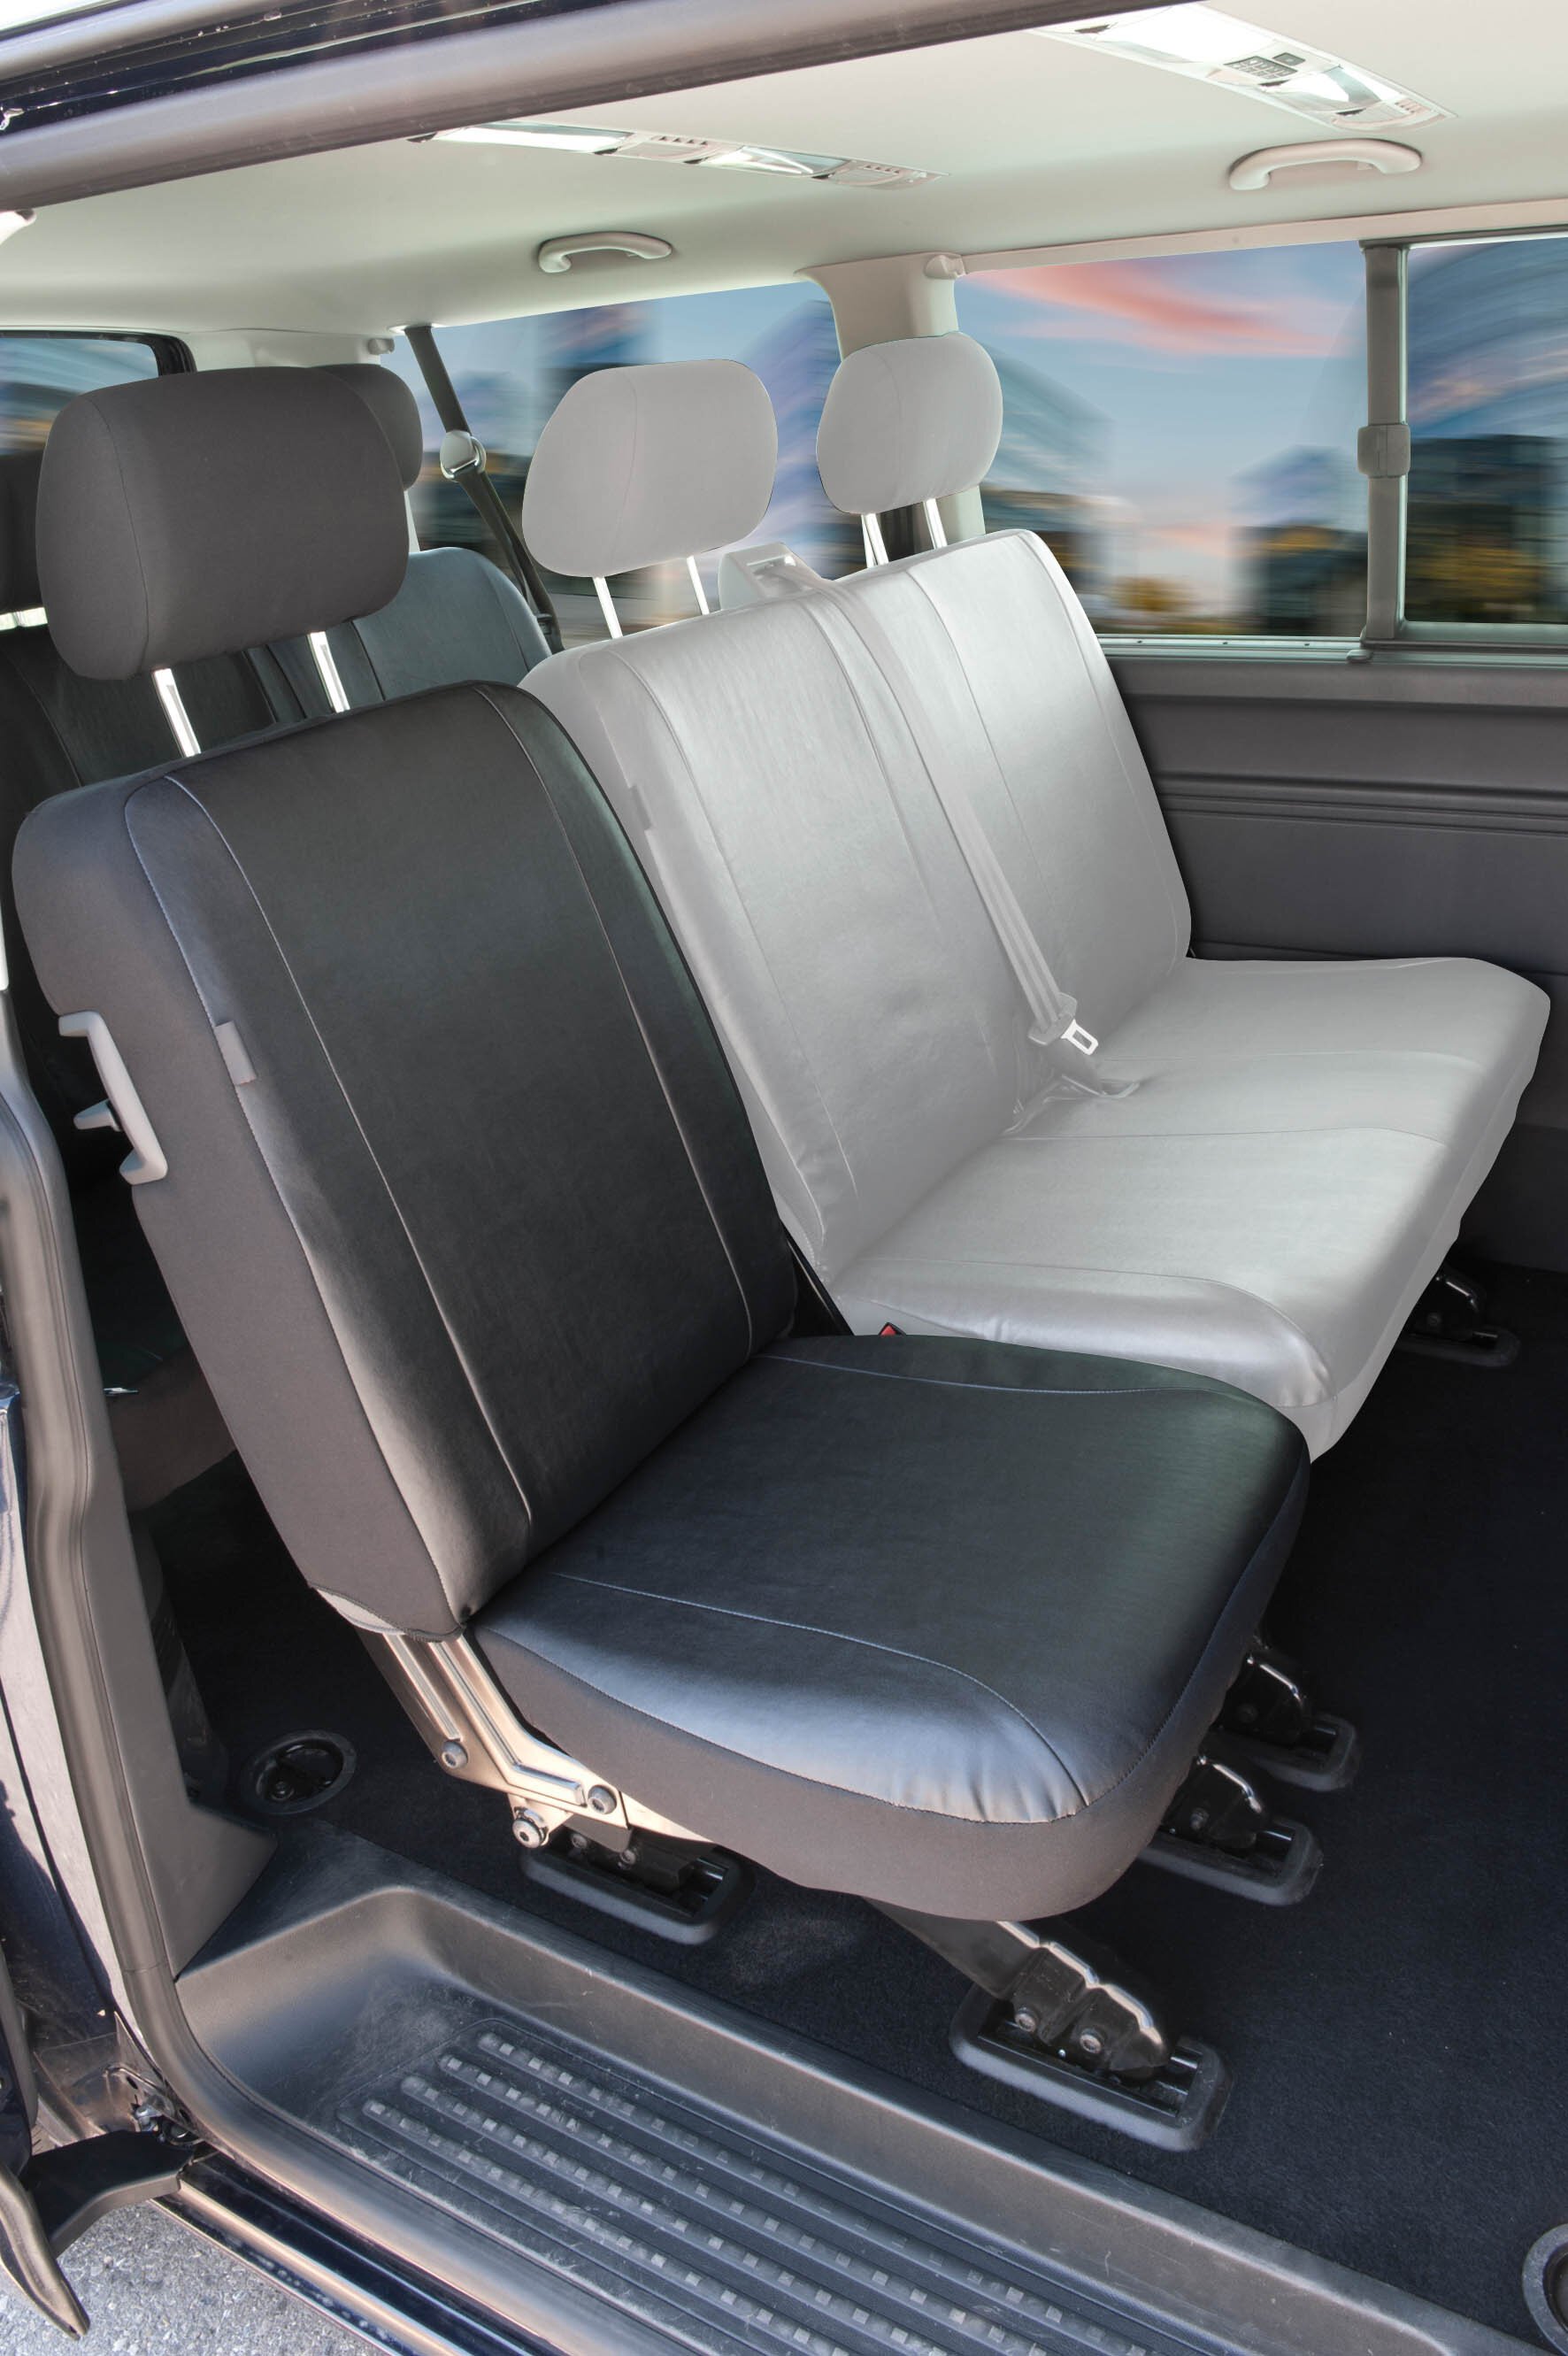 Housse de siège Transporter en simili cuir pour VW T5, siège arrière simple